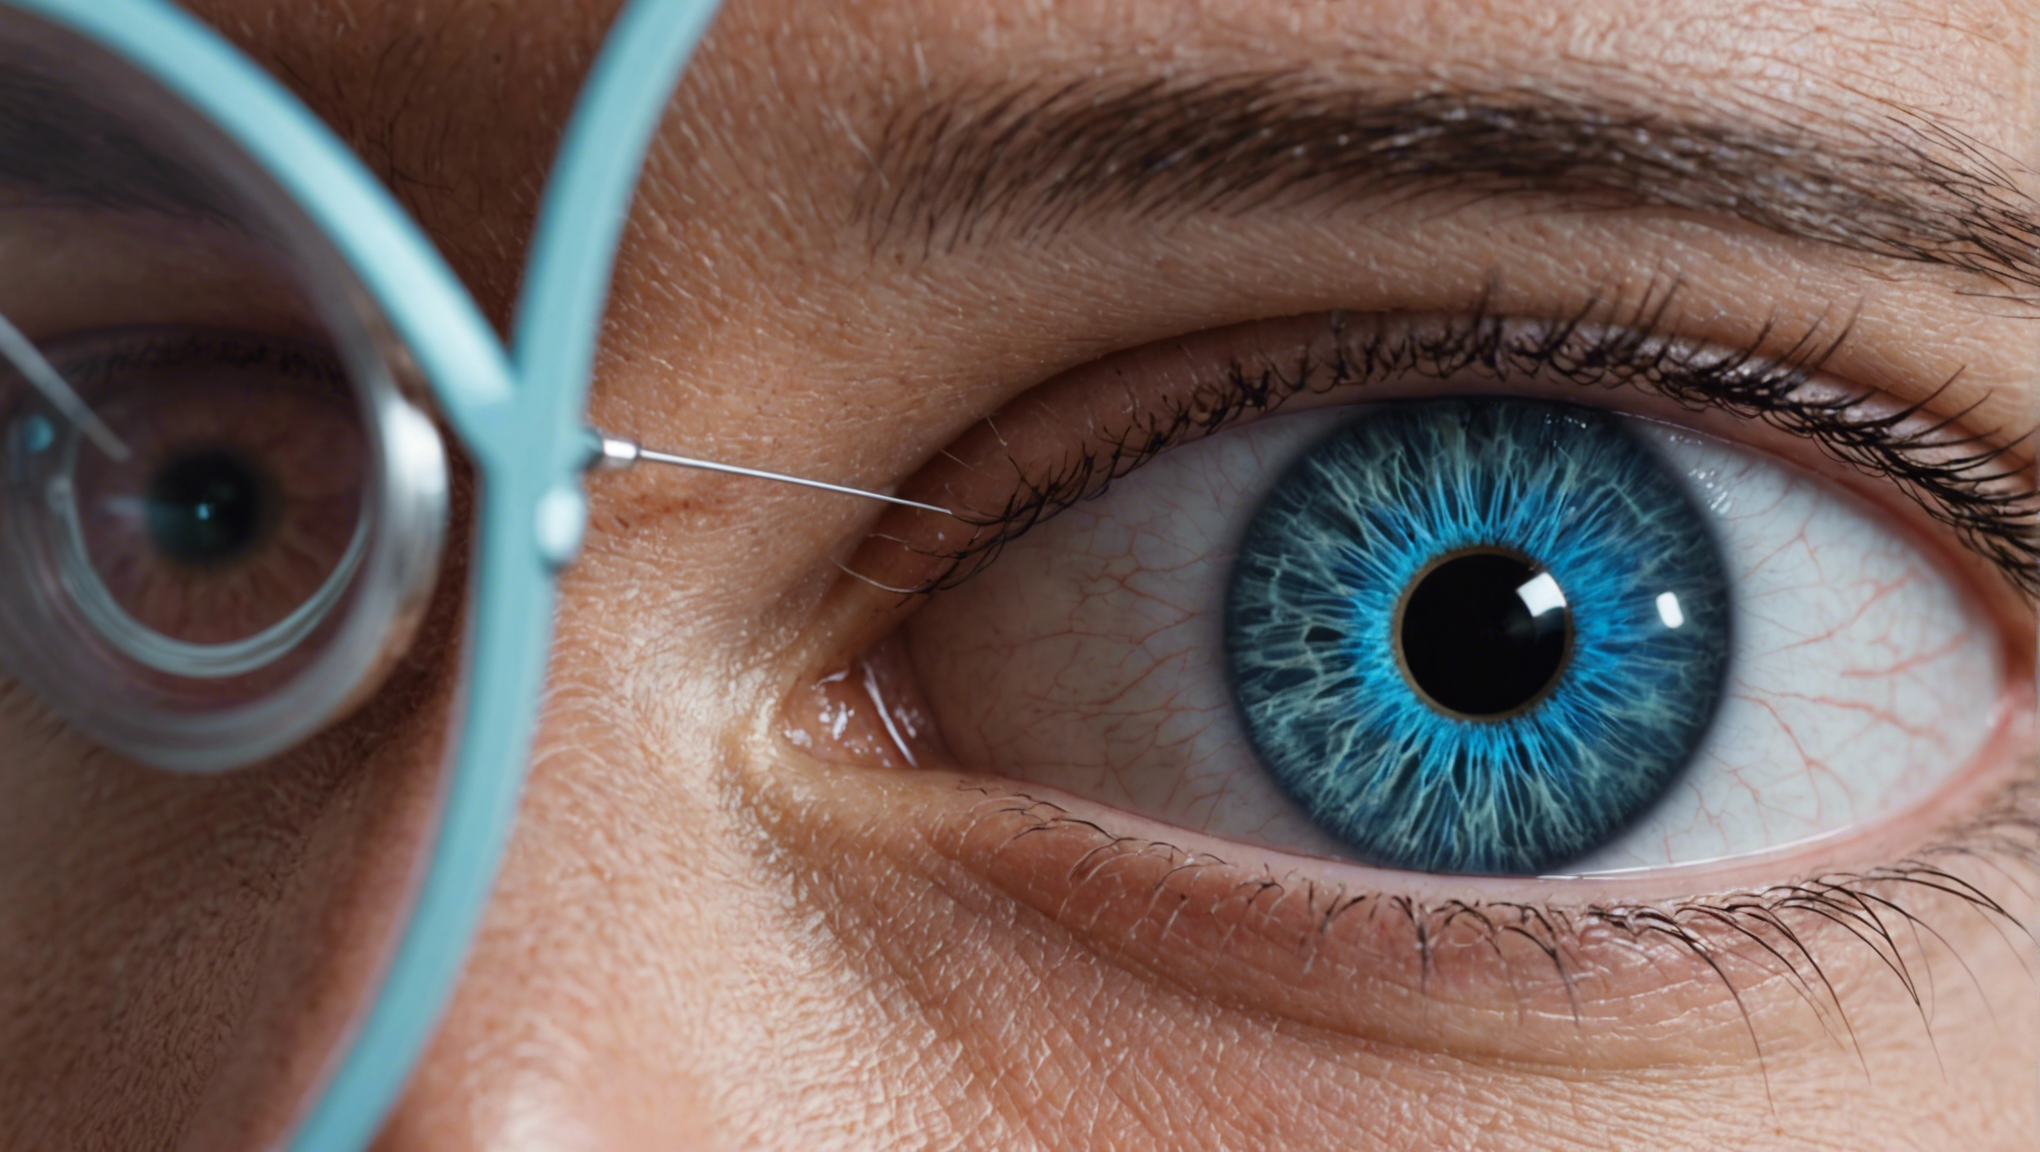 découvrez le lasik (laser-assisted in situ keratomileusis), une opération de la vue au laser pour corriger la vision, en savoir plus sur cette chirurgie réfractive.